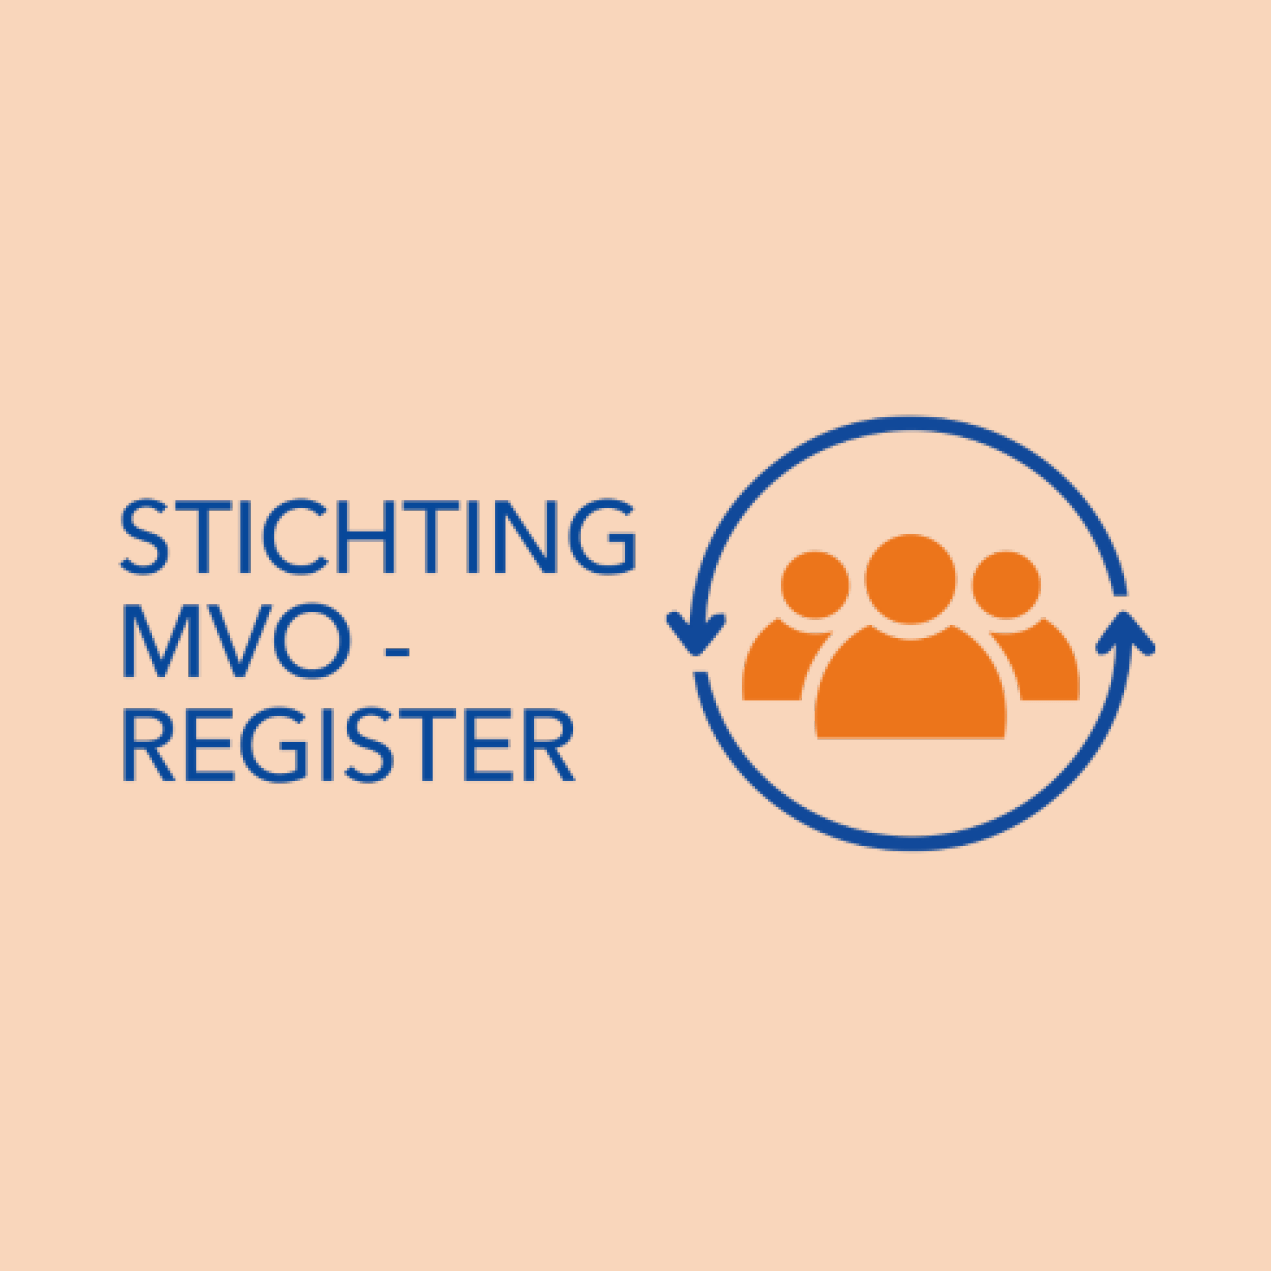 Onemeeting CSR partner - Stichting MVO register